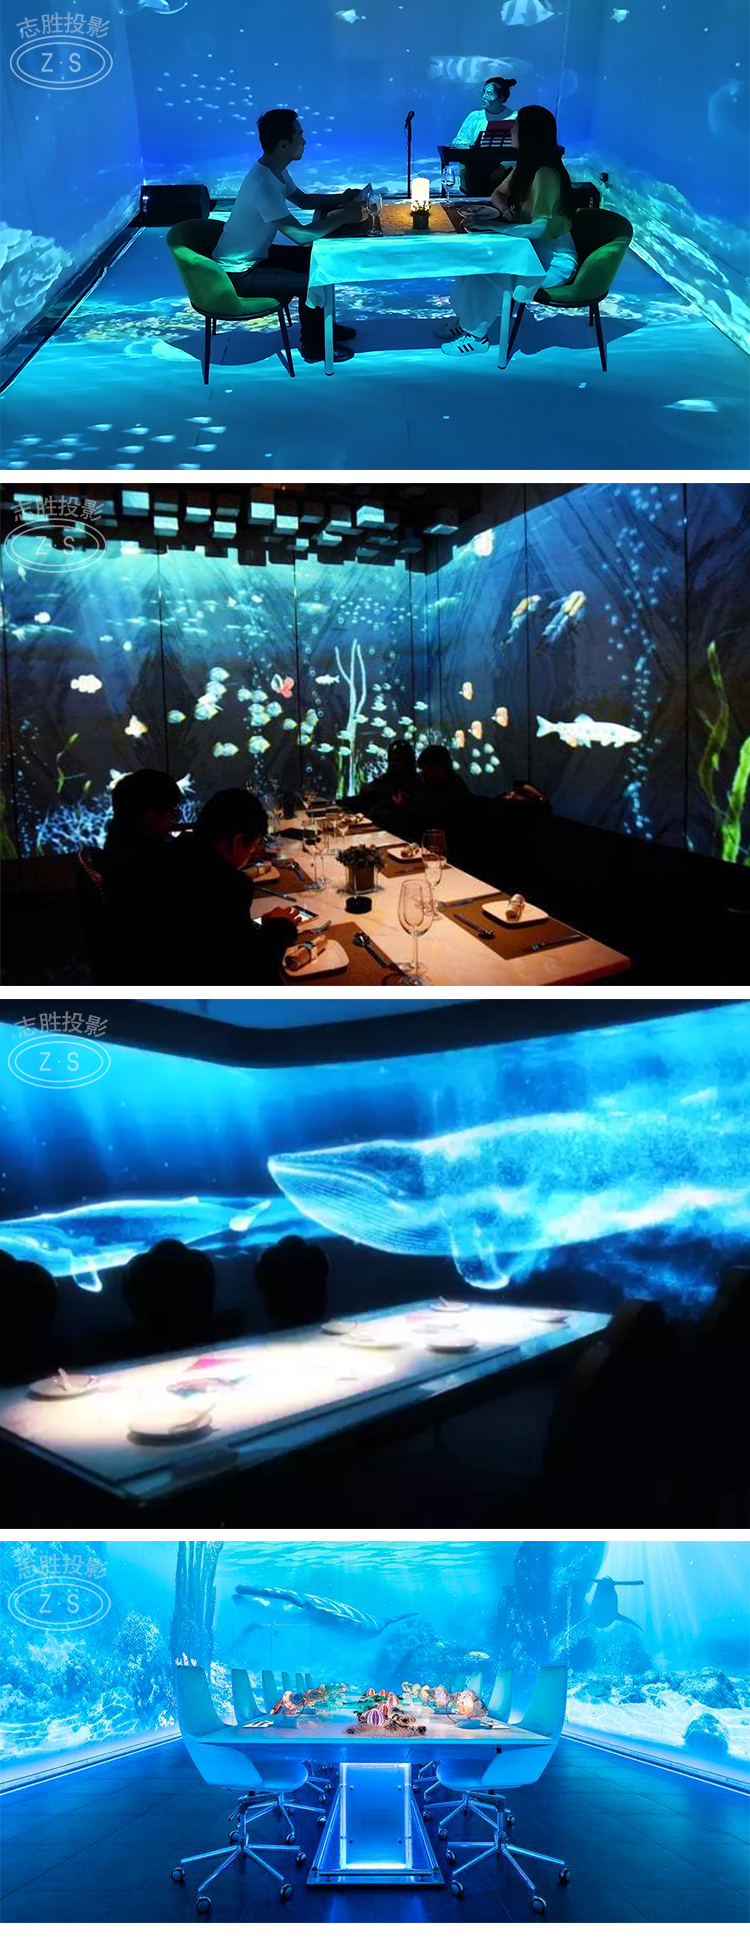 沉浸式餐厅投影全息影像室内大型餐厅投影志胜游艺